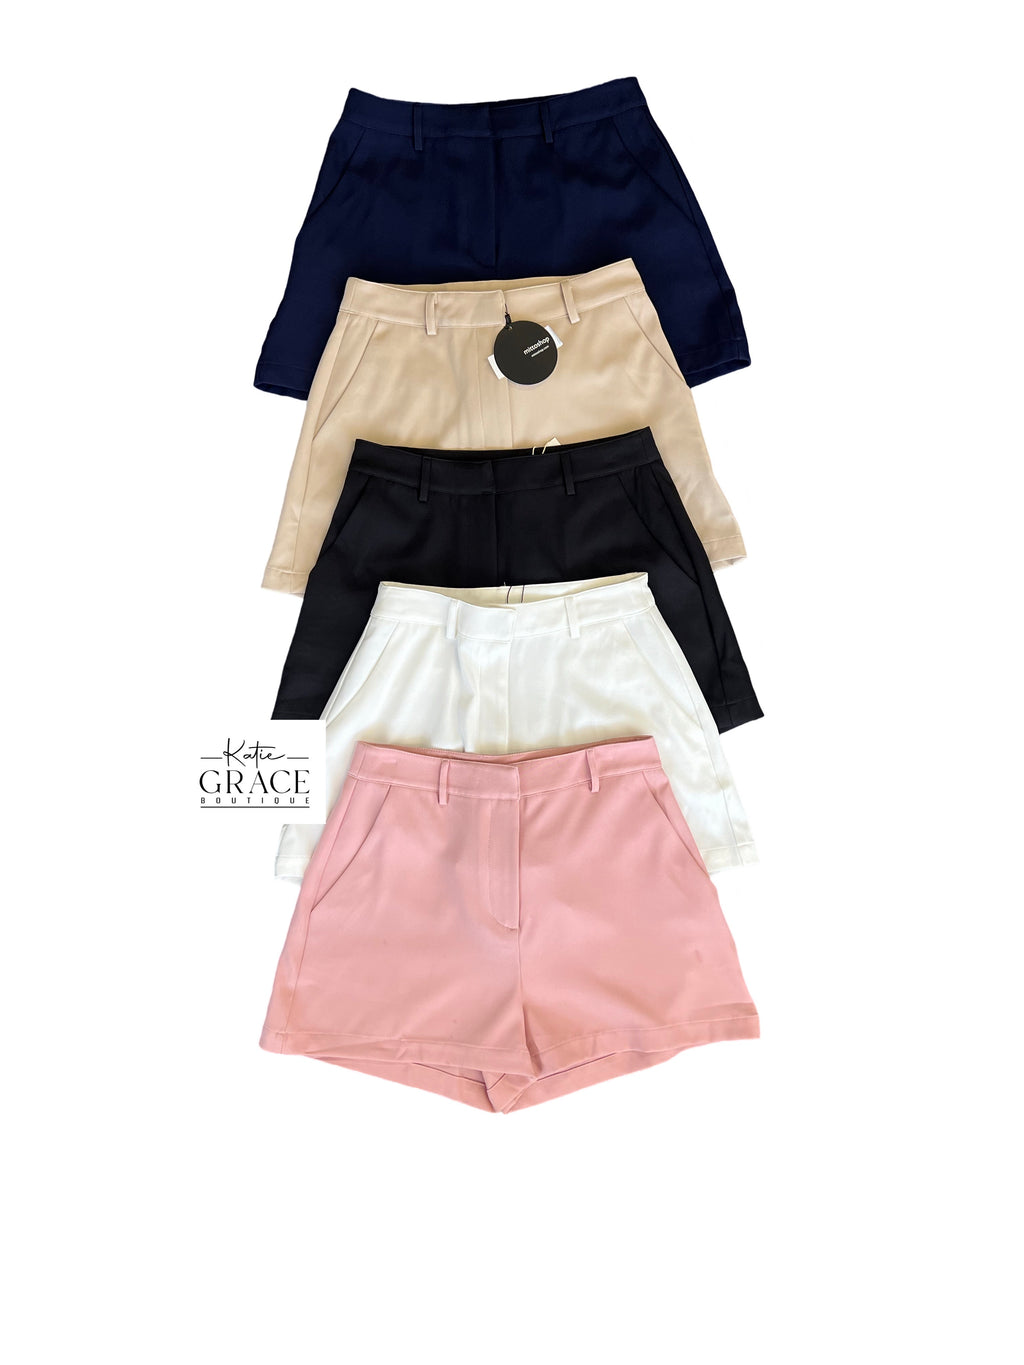 "Carmen" Tailored Shorts, 2 colors - The Katie Grace Boutique